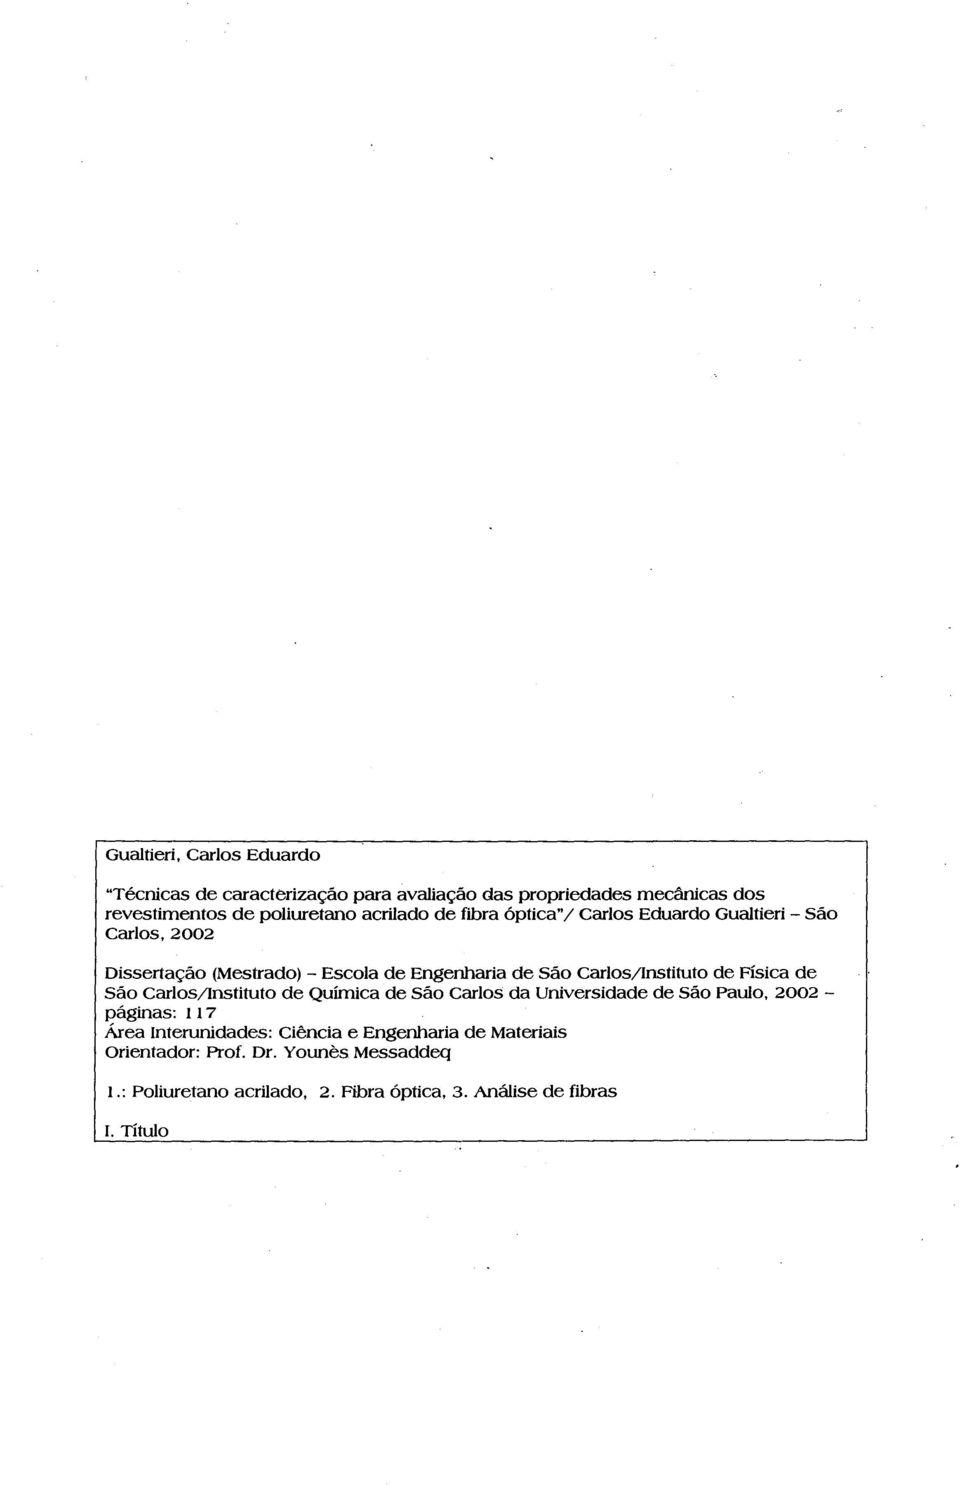 Carlos/Instituto de Física de São CarloS/lnstituto de Química de São Carlos da Universidade de São Paulo, 2002 páginas: 117 Área